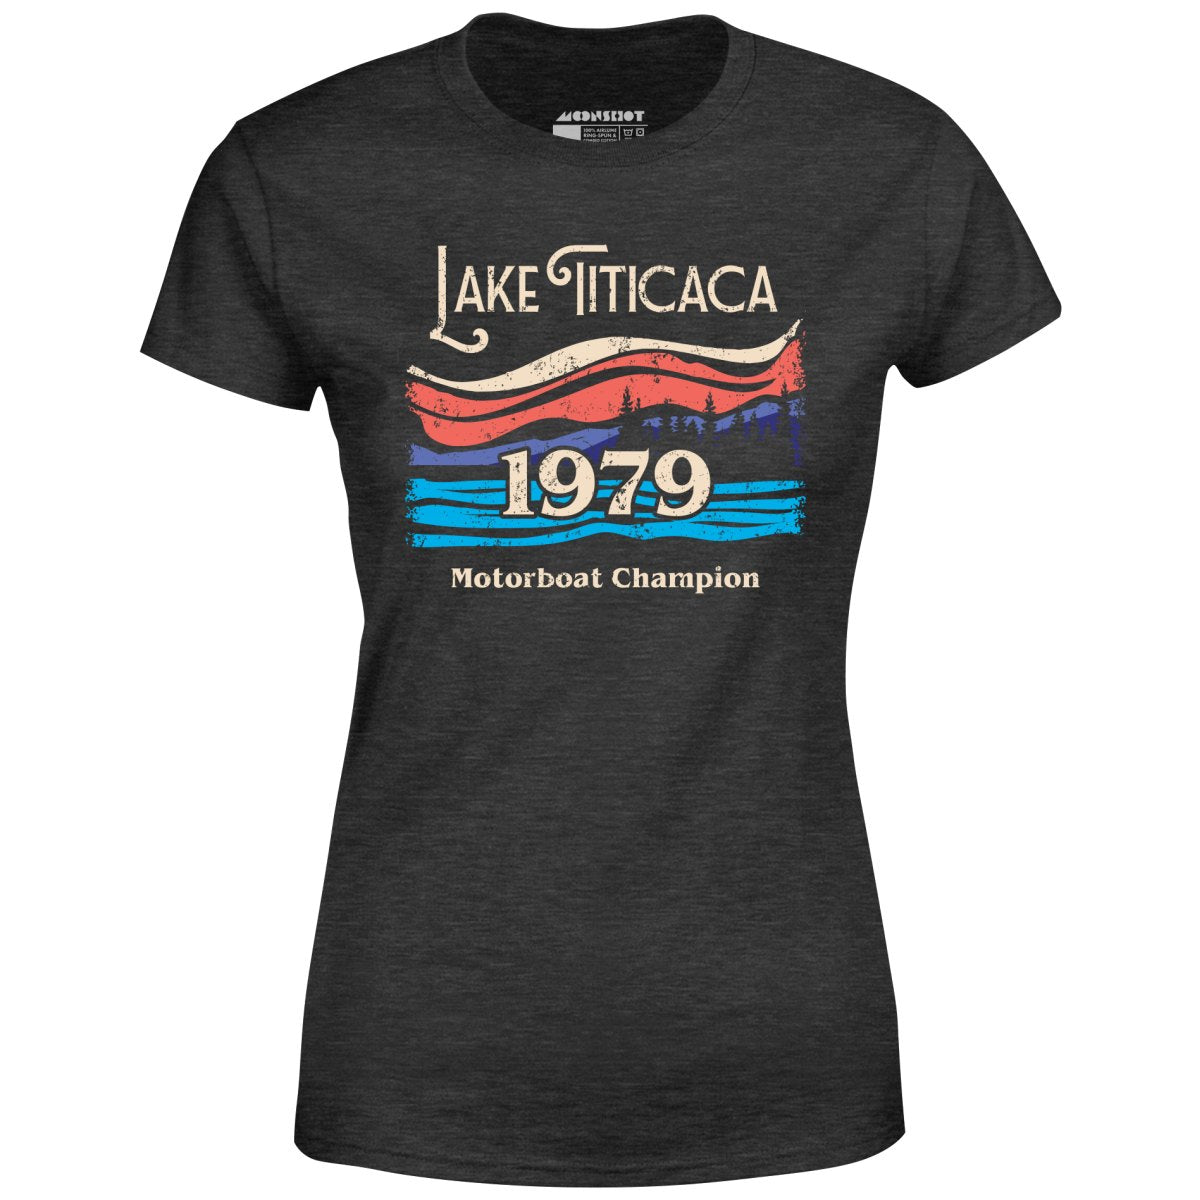 Lake Titicaca Motorboat Champion - Women's T-Shirt